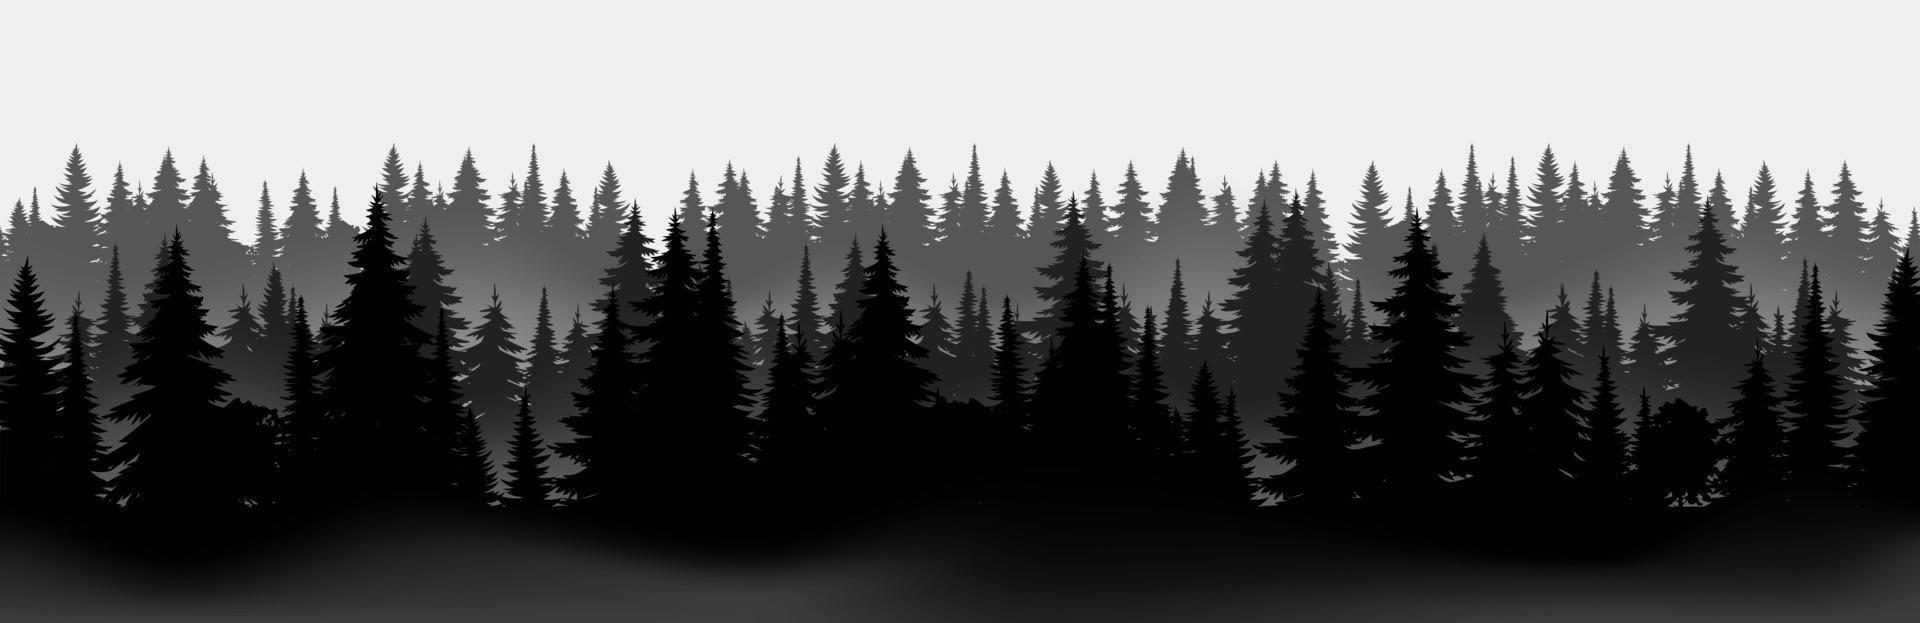 vetor montanhas floresta silhueta preta textura de fundo, de floresta de coníferas, vetor. árvores da estação abeto, abeto. turismo de férias para caminhadas. paisagem horizontal